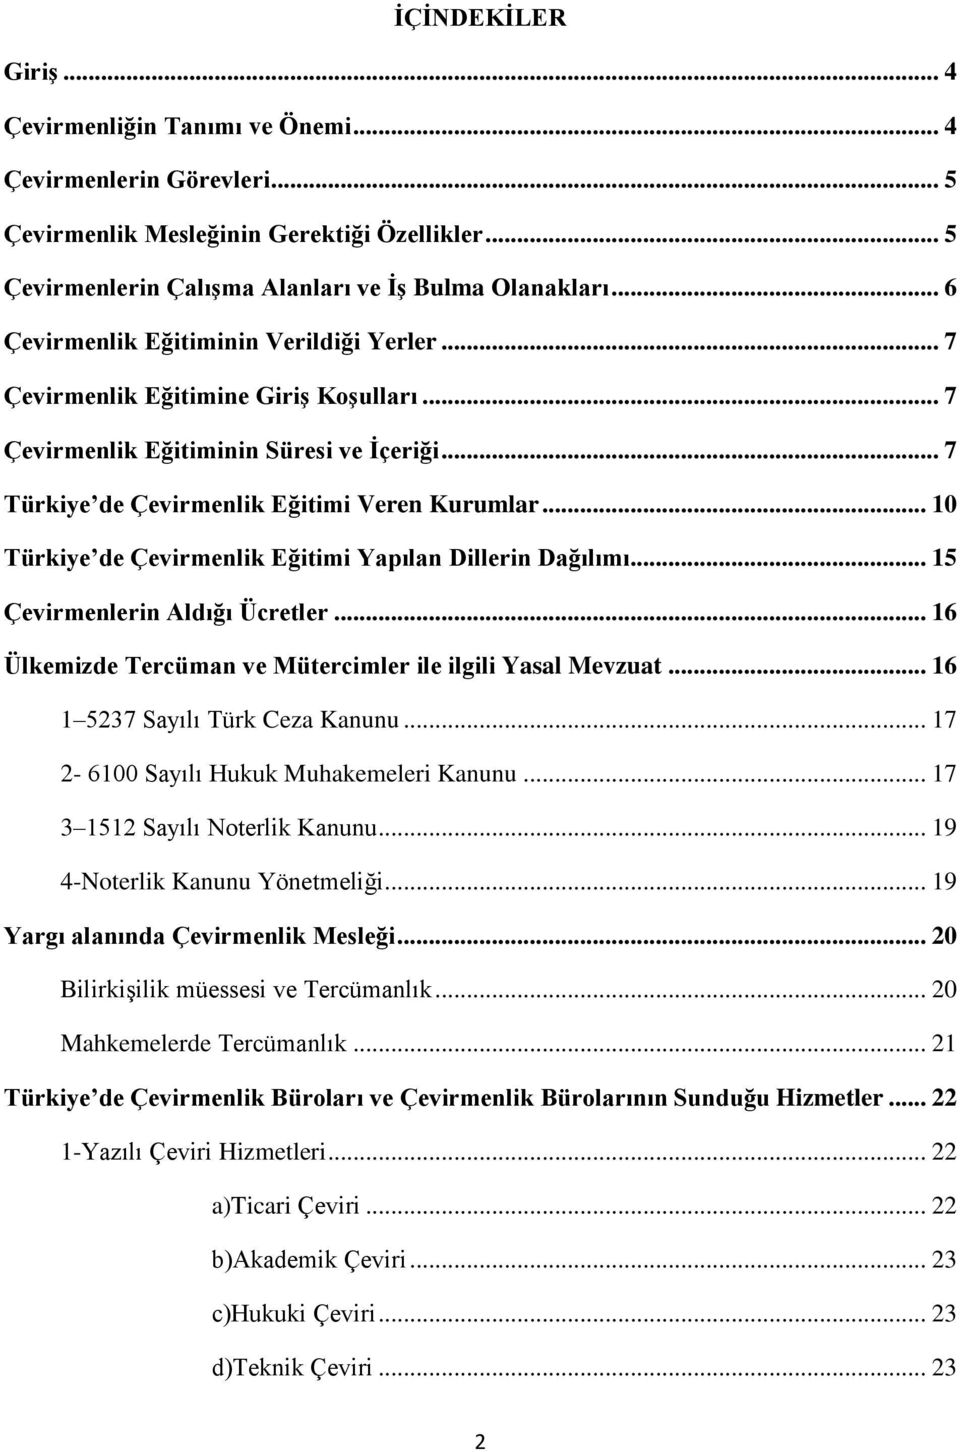 .. 10 Türkiye de Çevirmenlik Eğitimi Yapılan Dillerin Dağılımı... 15 Çevirmenlerin Aldığı Ücretler... 16 Ülkemizde Tercüman ve Mütercimler ile ilgili Yasal Mevzuat... 16 1 5237 Sayılı Türk Ceza Kanunu.